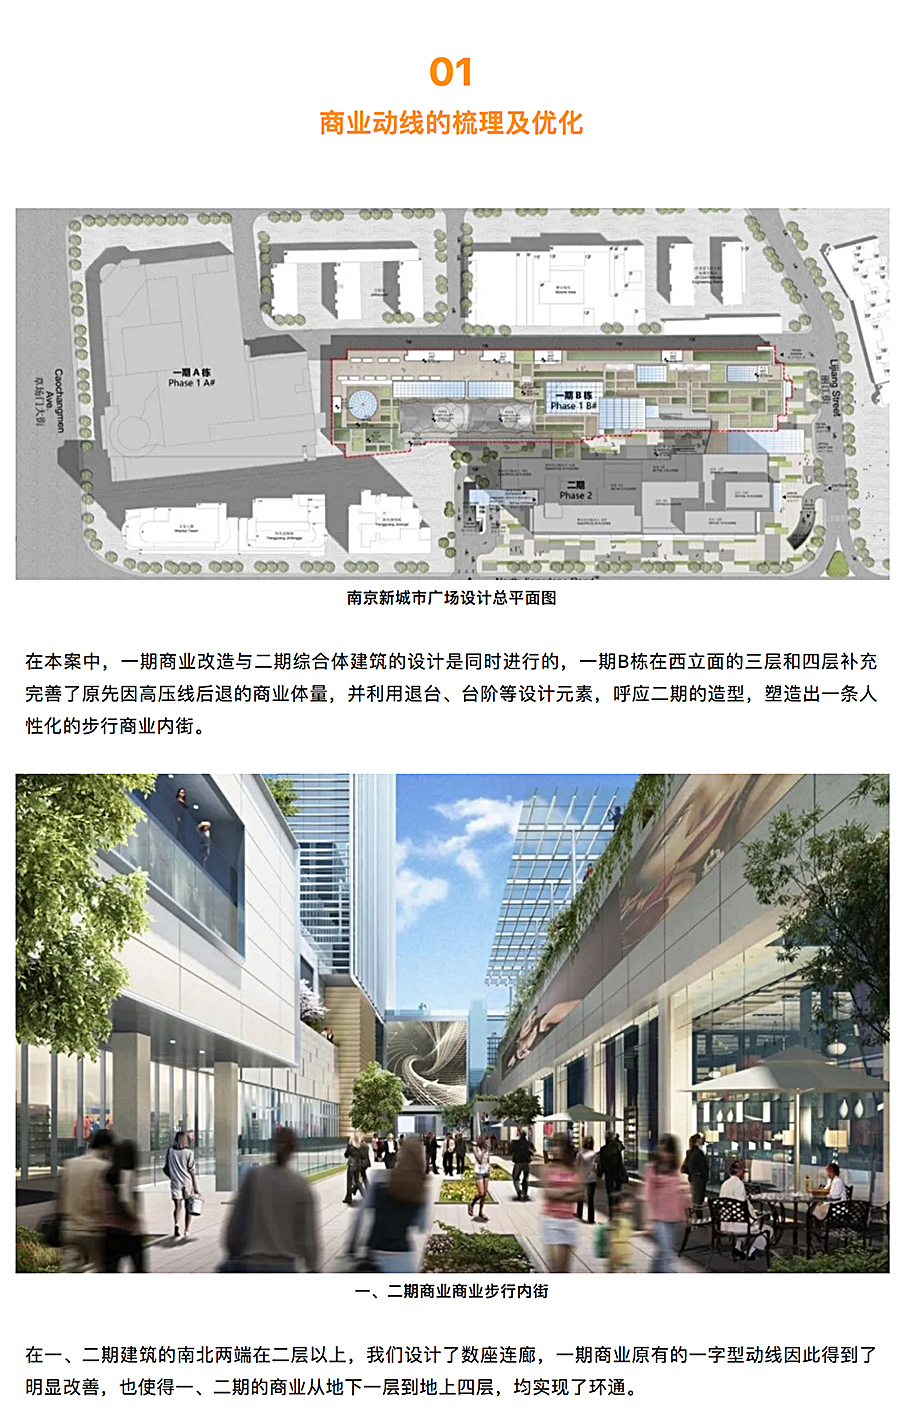 与时俱进的升级改造-_-南京龙江新城市广场一期商业改造_0004_图层-5.jpg